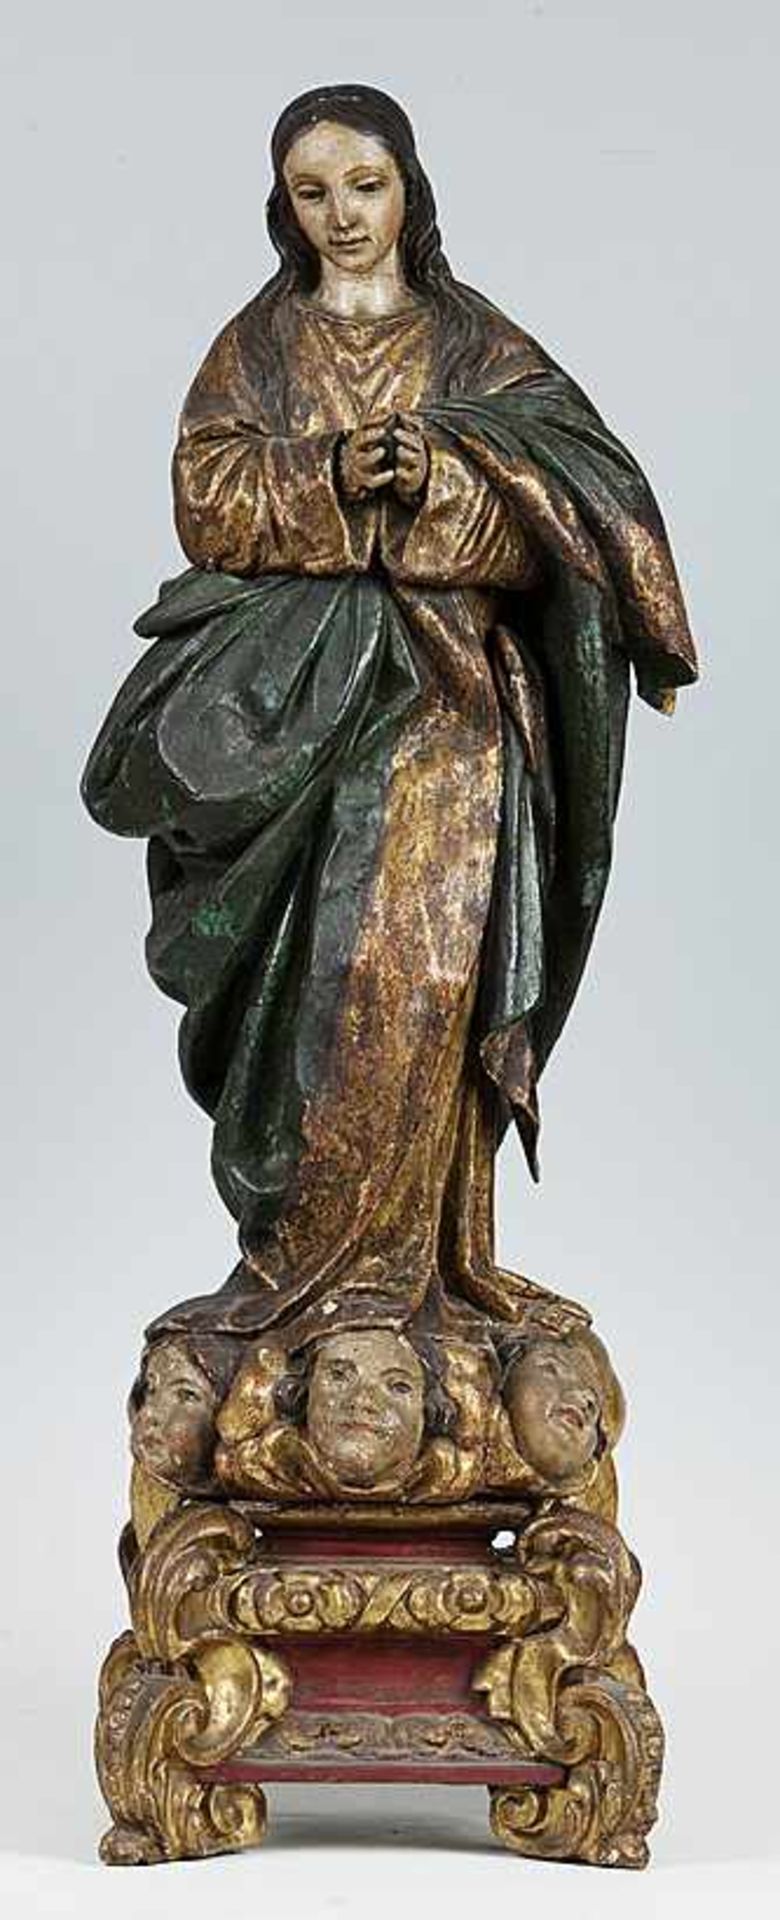 Spanien (Um 1700) Maria Immaculata.Holz, geschnitzt, farbig gefasst. Standfigur mit betend